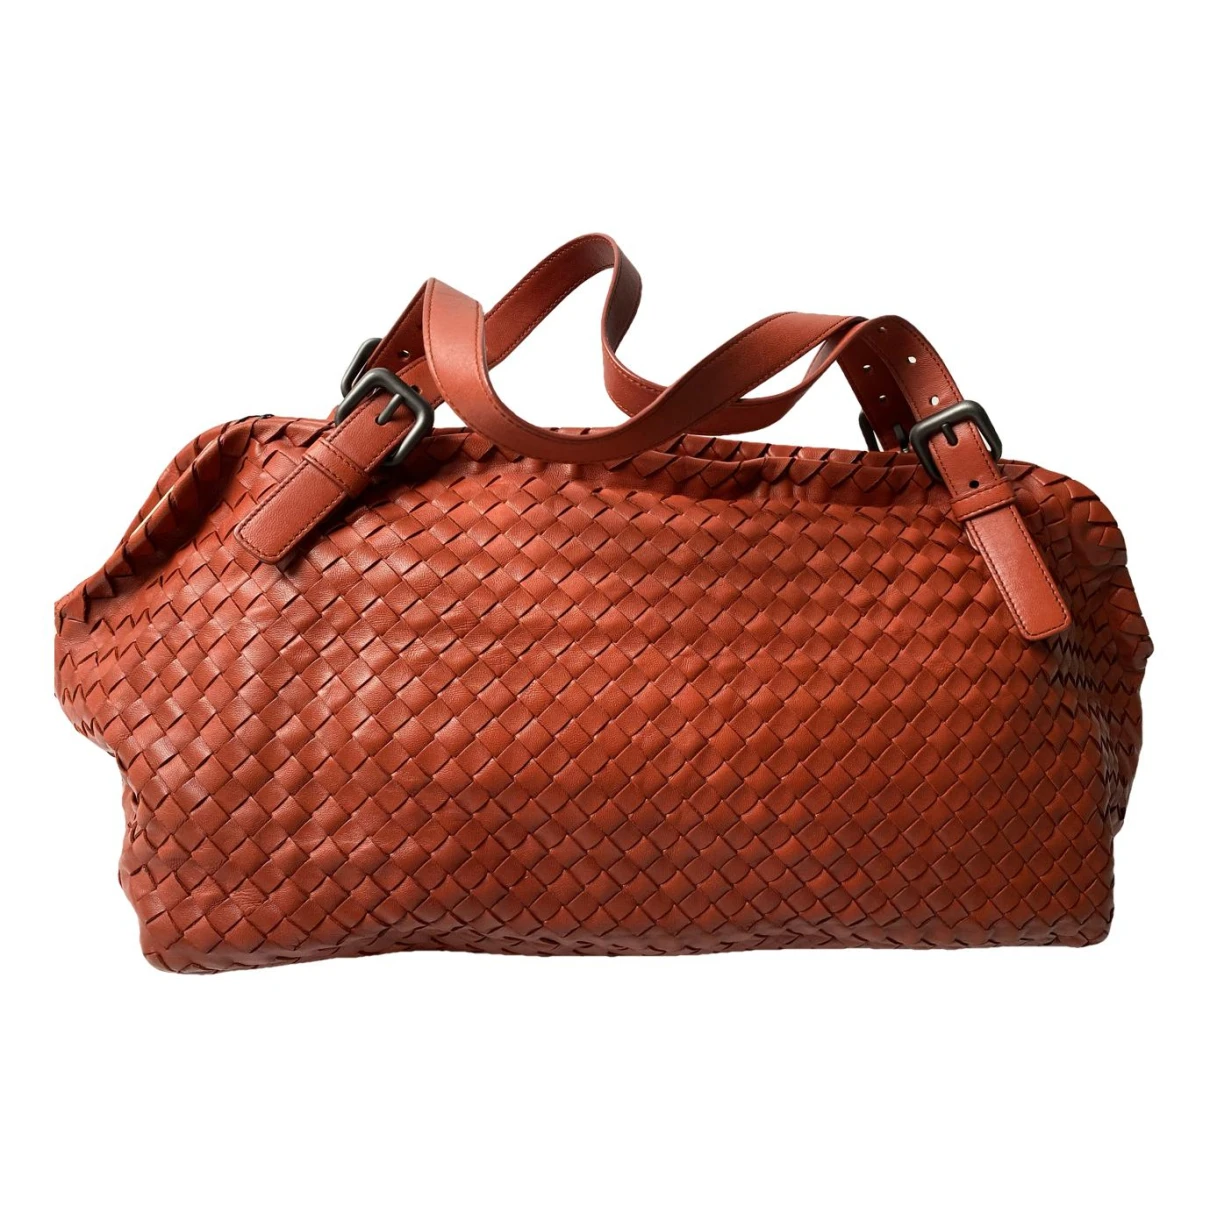 Pre-owned Bottega Veneta Leather Handbag In Orange